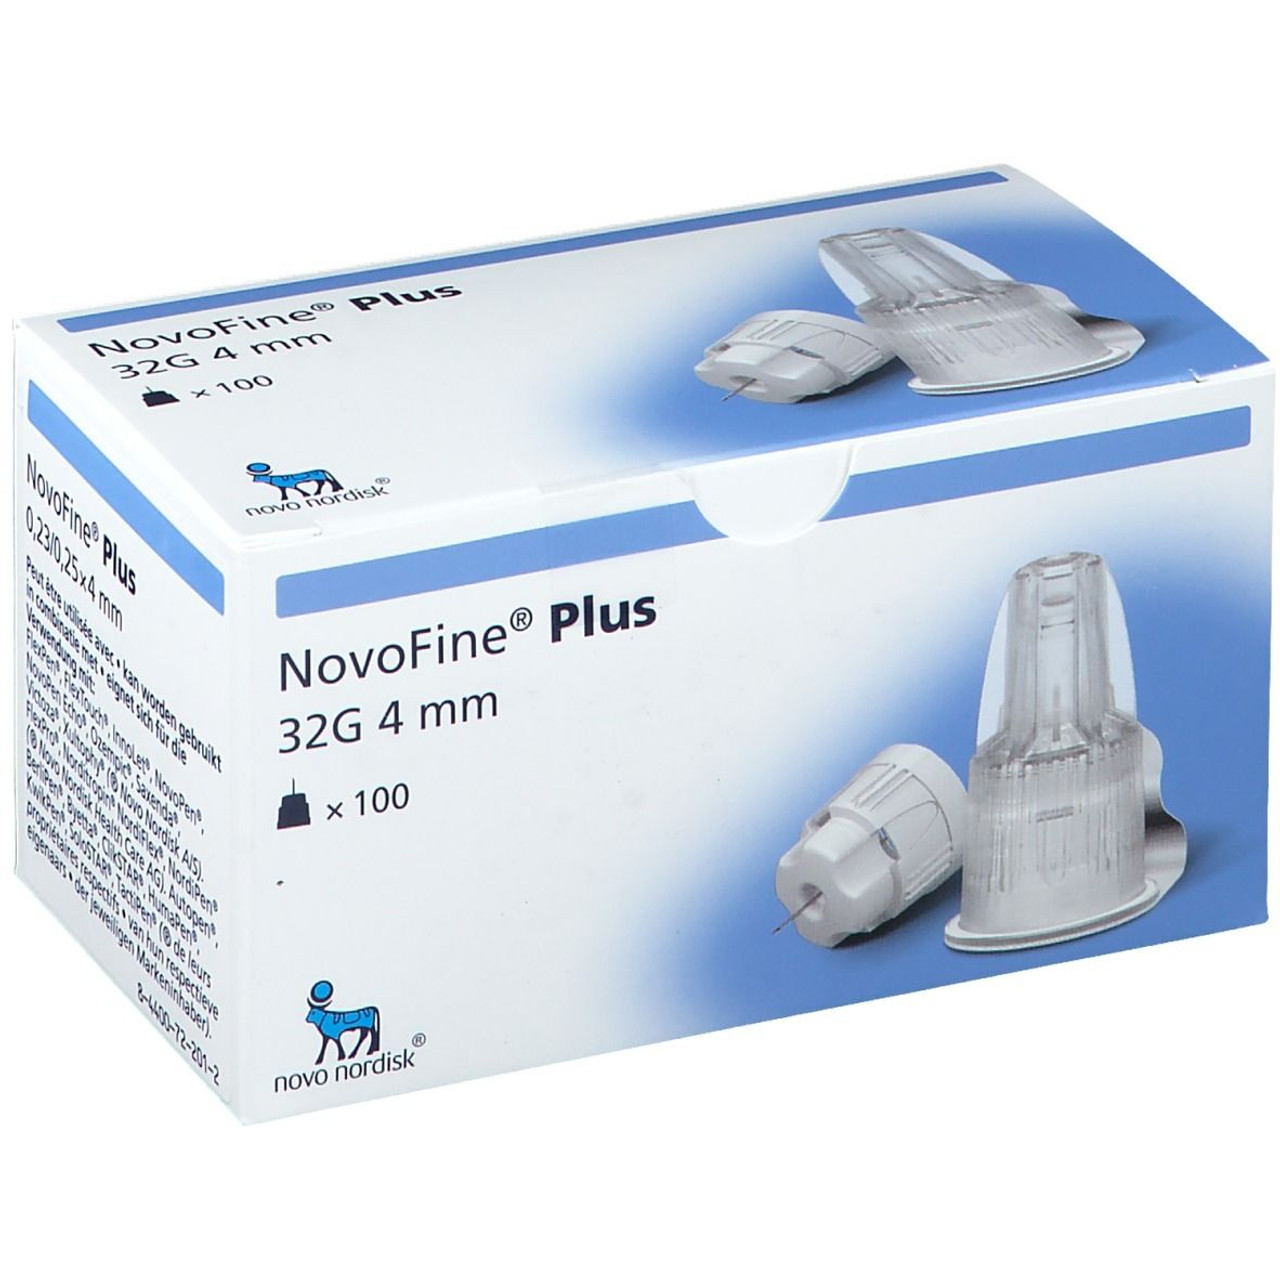 Buy Novofine Insulin Needles 32G 4mm - 100pK Discount PetMeds